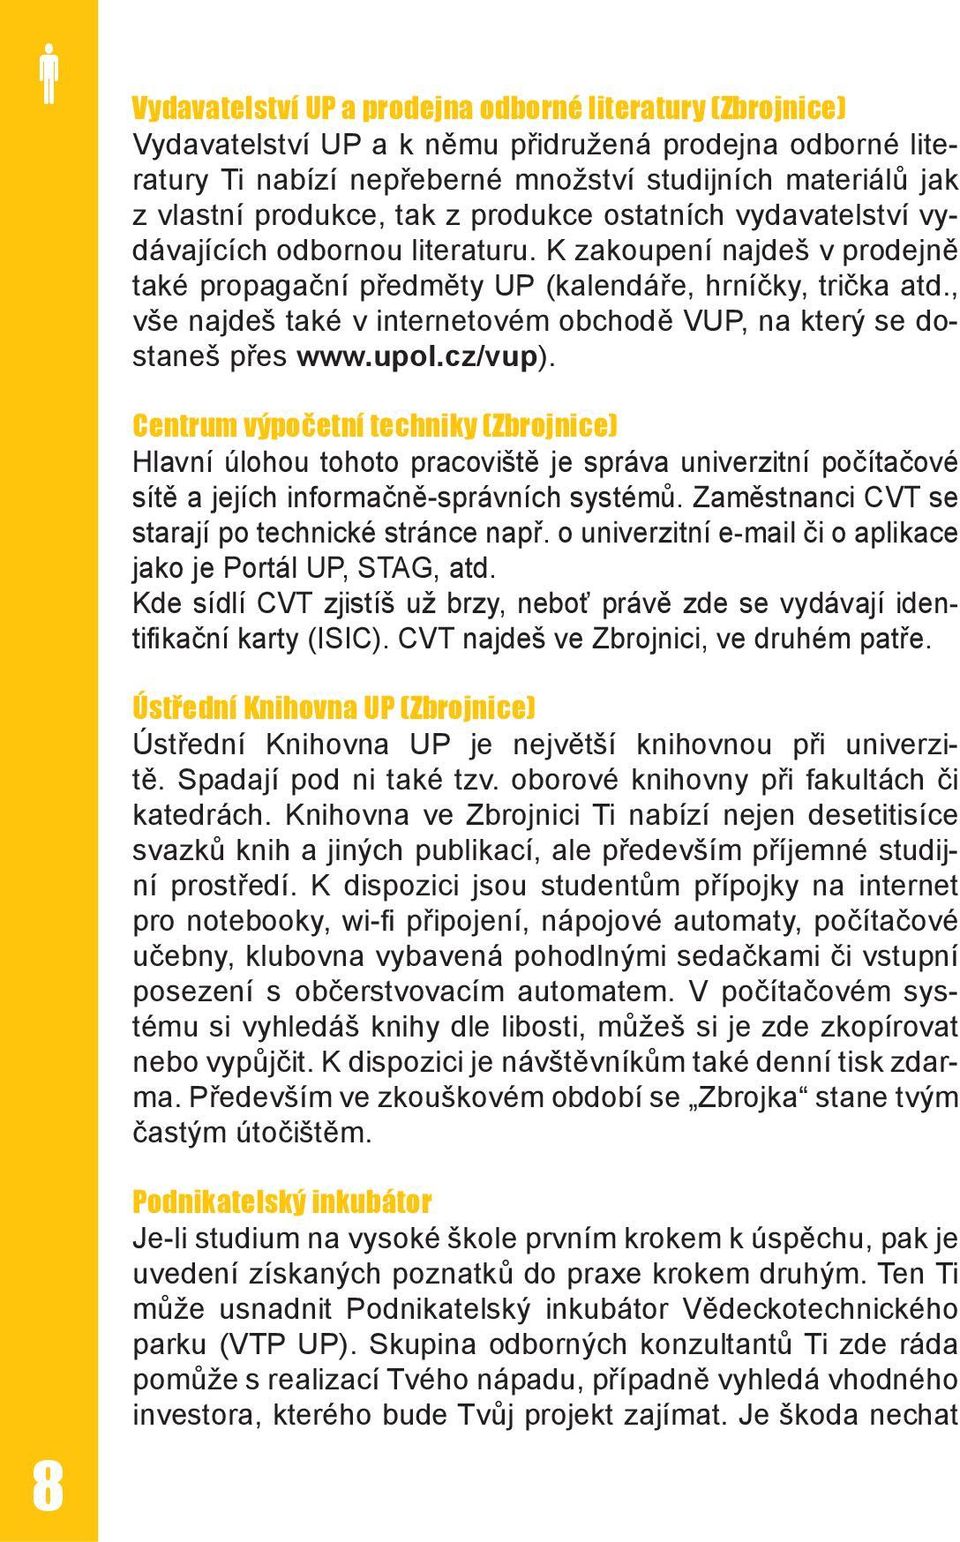 , vše najdeš také v internetovém obchodě VUP, na který se dostaneš přes www.upol.cz/vup).